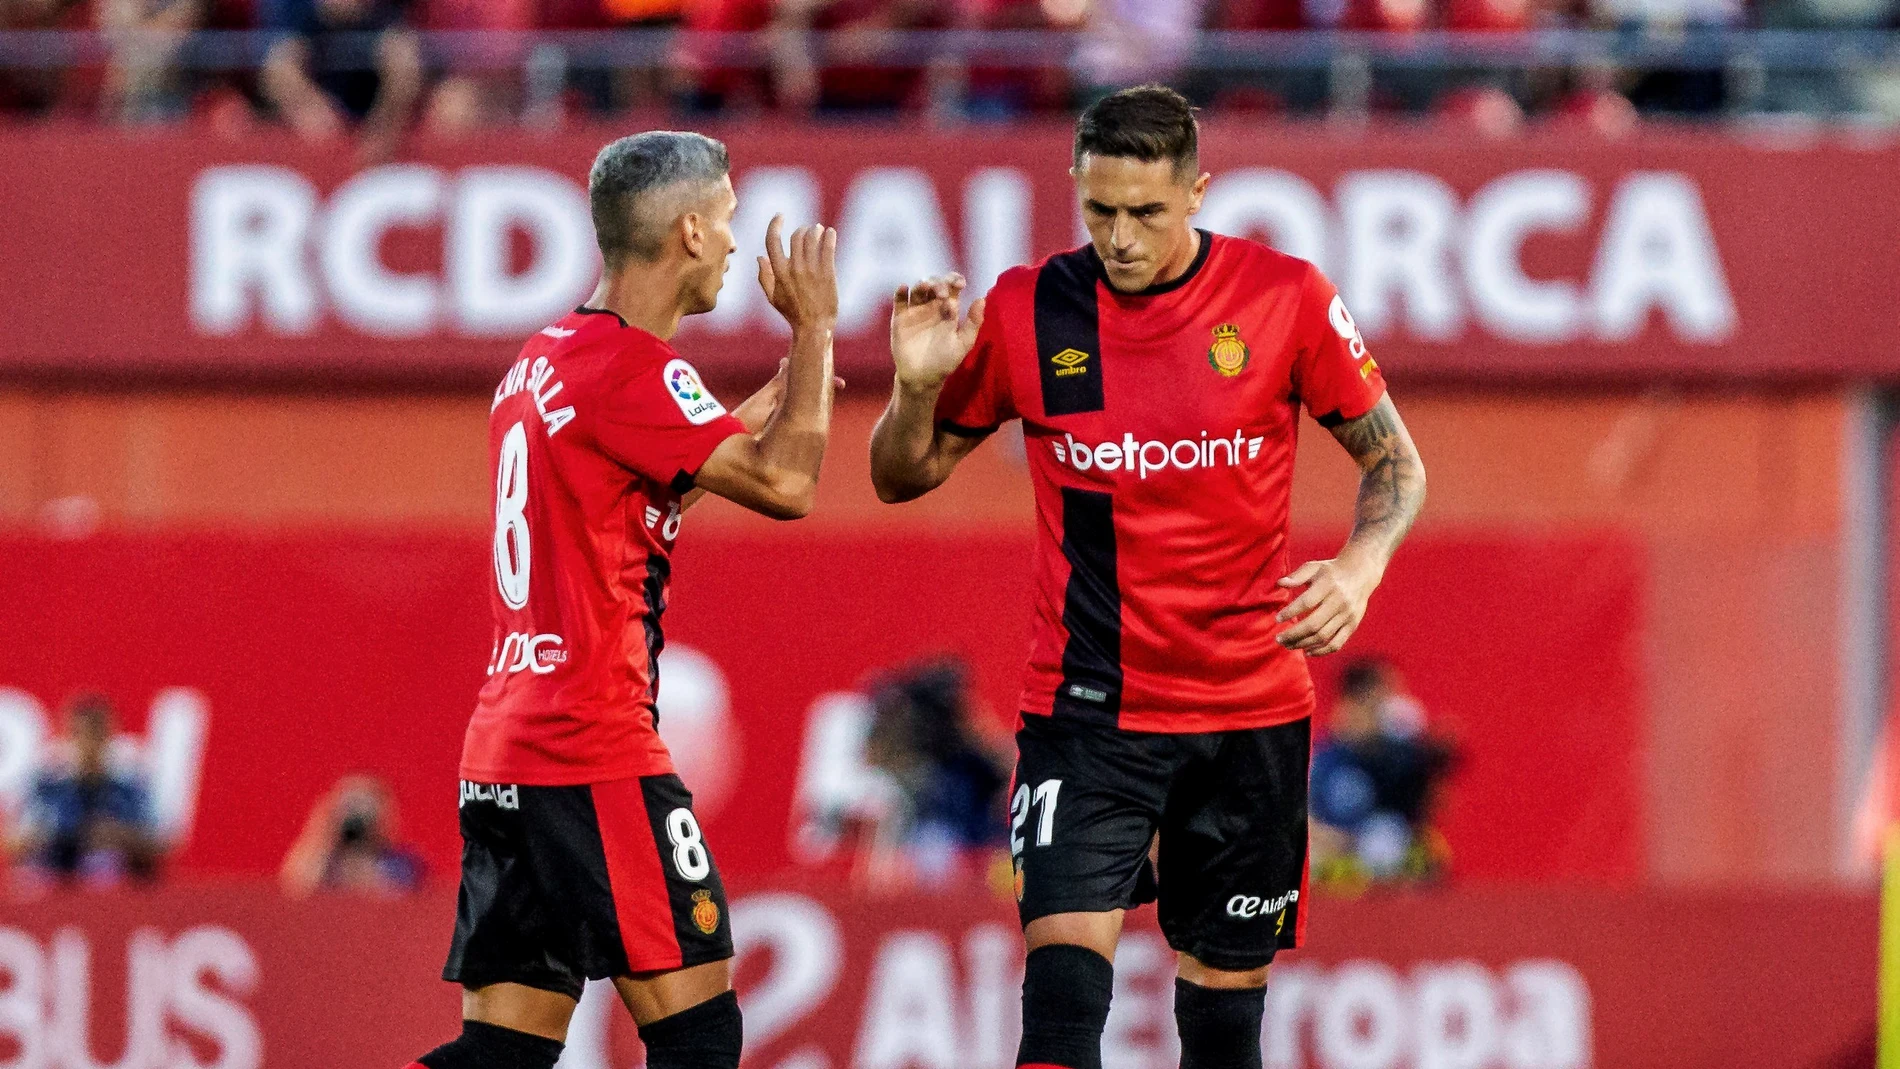 Salva Sevilla celebra un gol junto a Raíllo